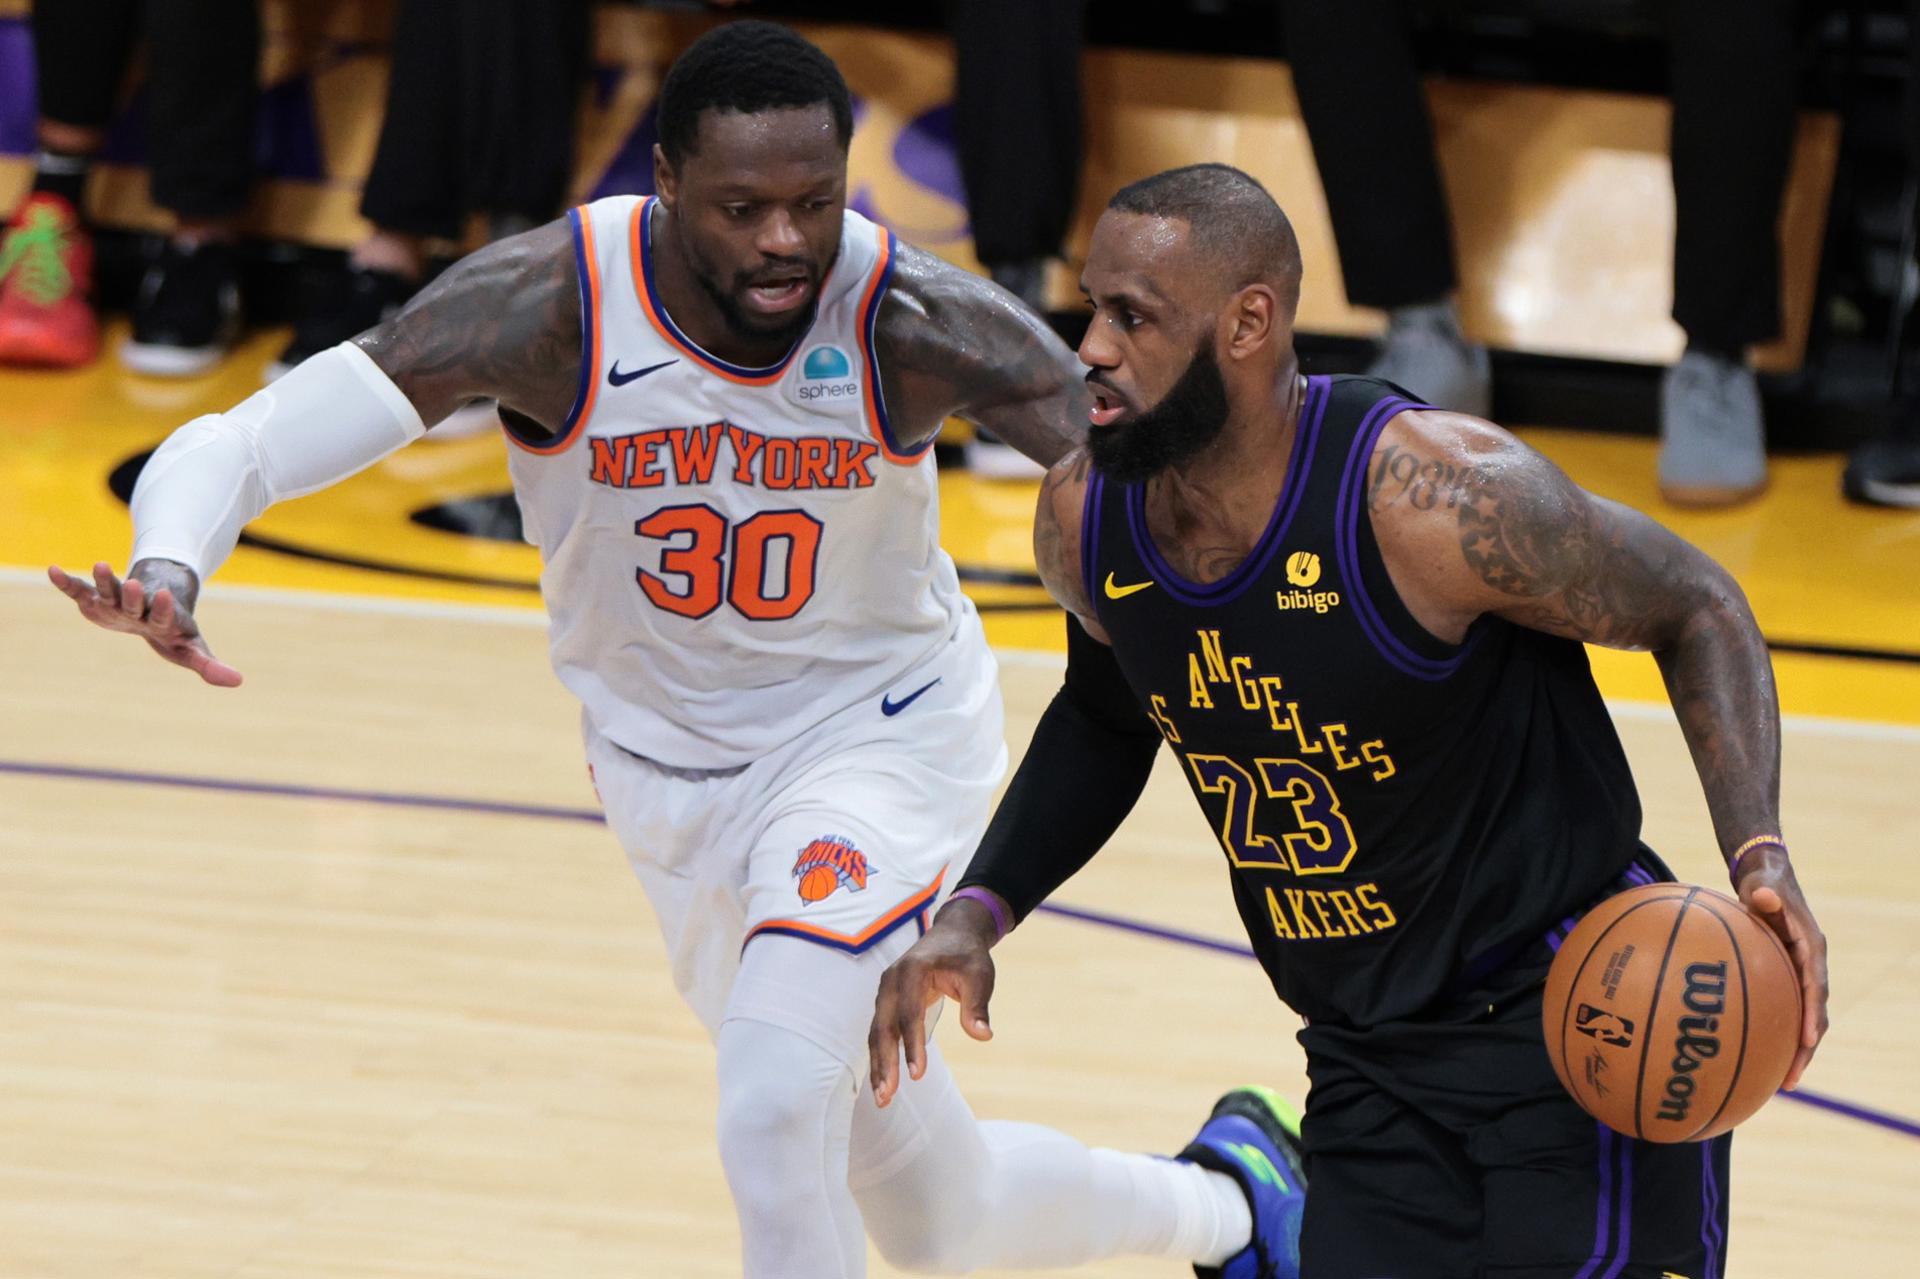 El juagador de los Angeles Lakers LeBron James (d) regatea el balón pasando por Julius Randle de los New York Knicks durante la primera mitad del partido de baloncesto de la NBA.EFE/EPA/ALLISON CENA